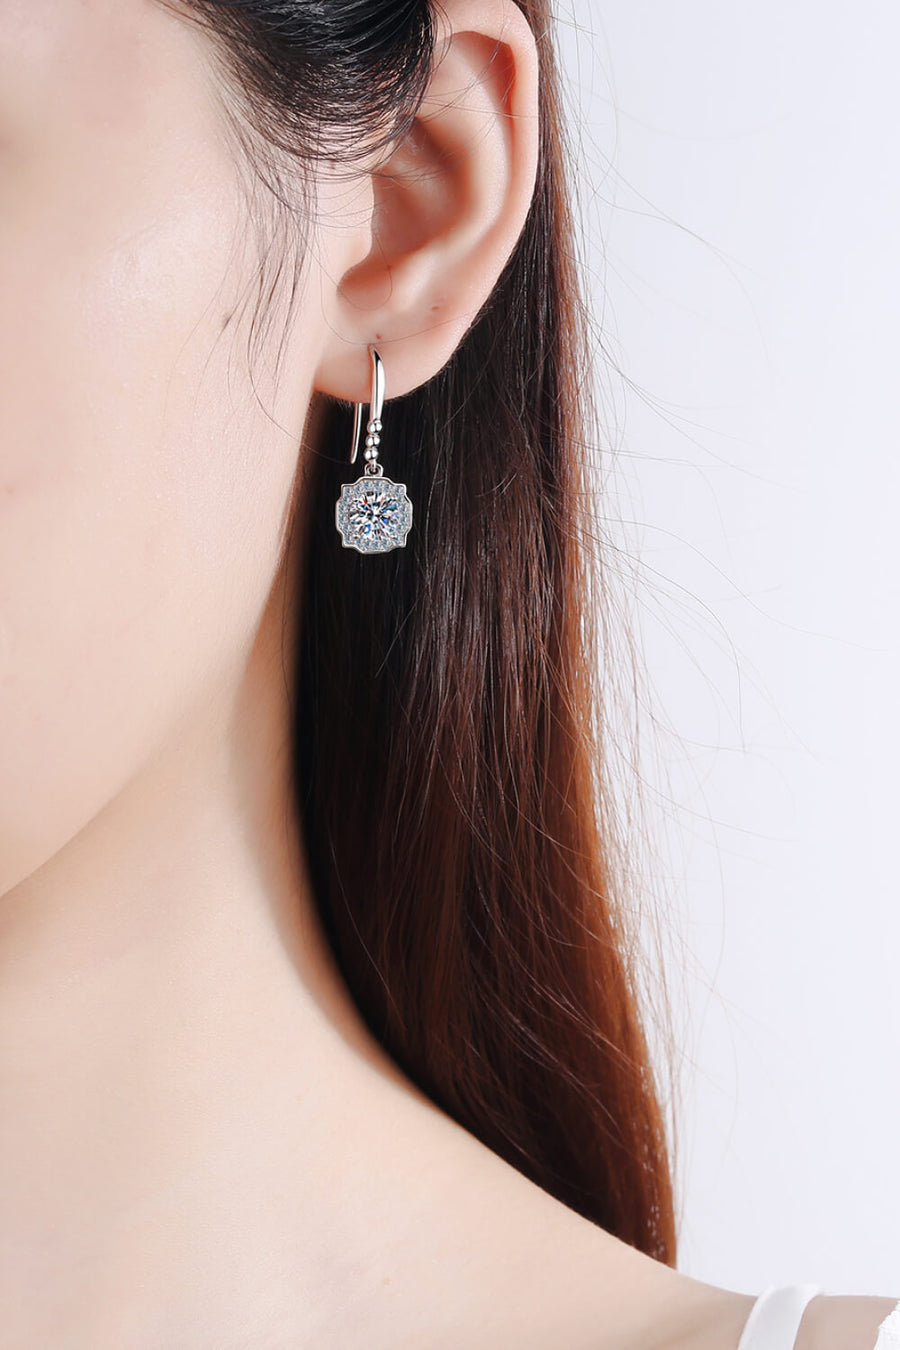 Best Diamond Earrings Jewelry Gifts for Women | 1 Carat Diamond Hook Earrings | MASON New York